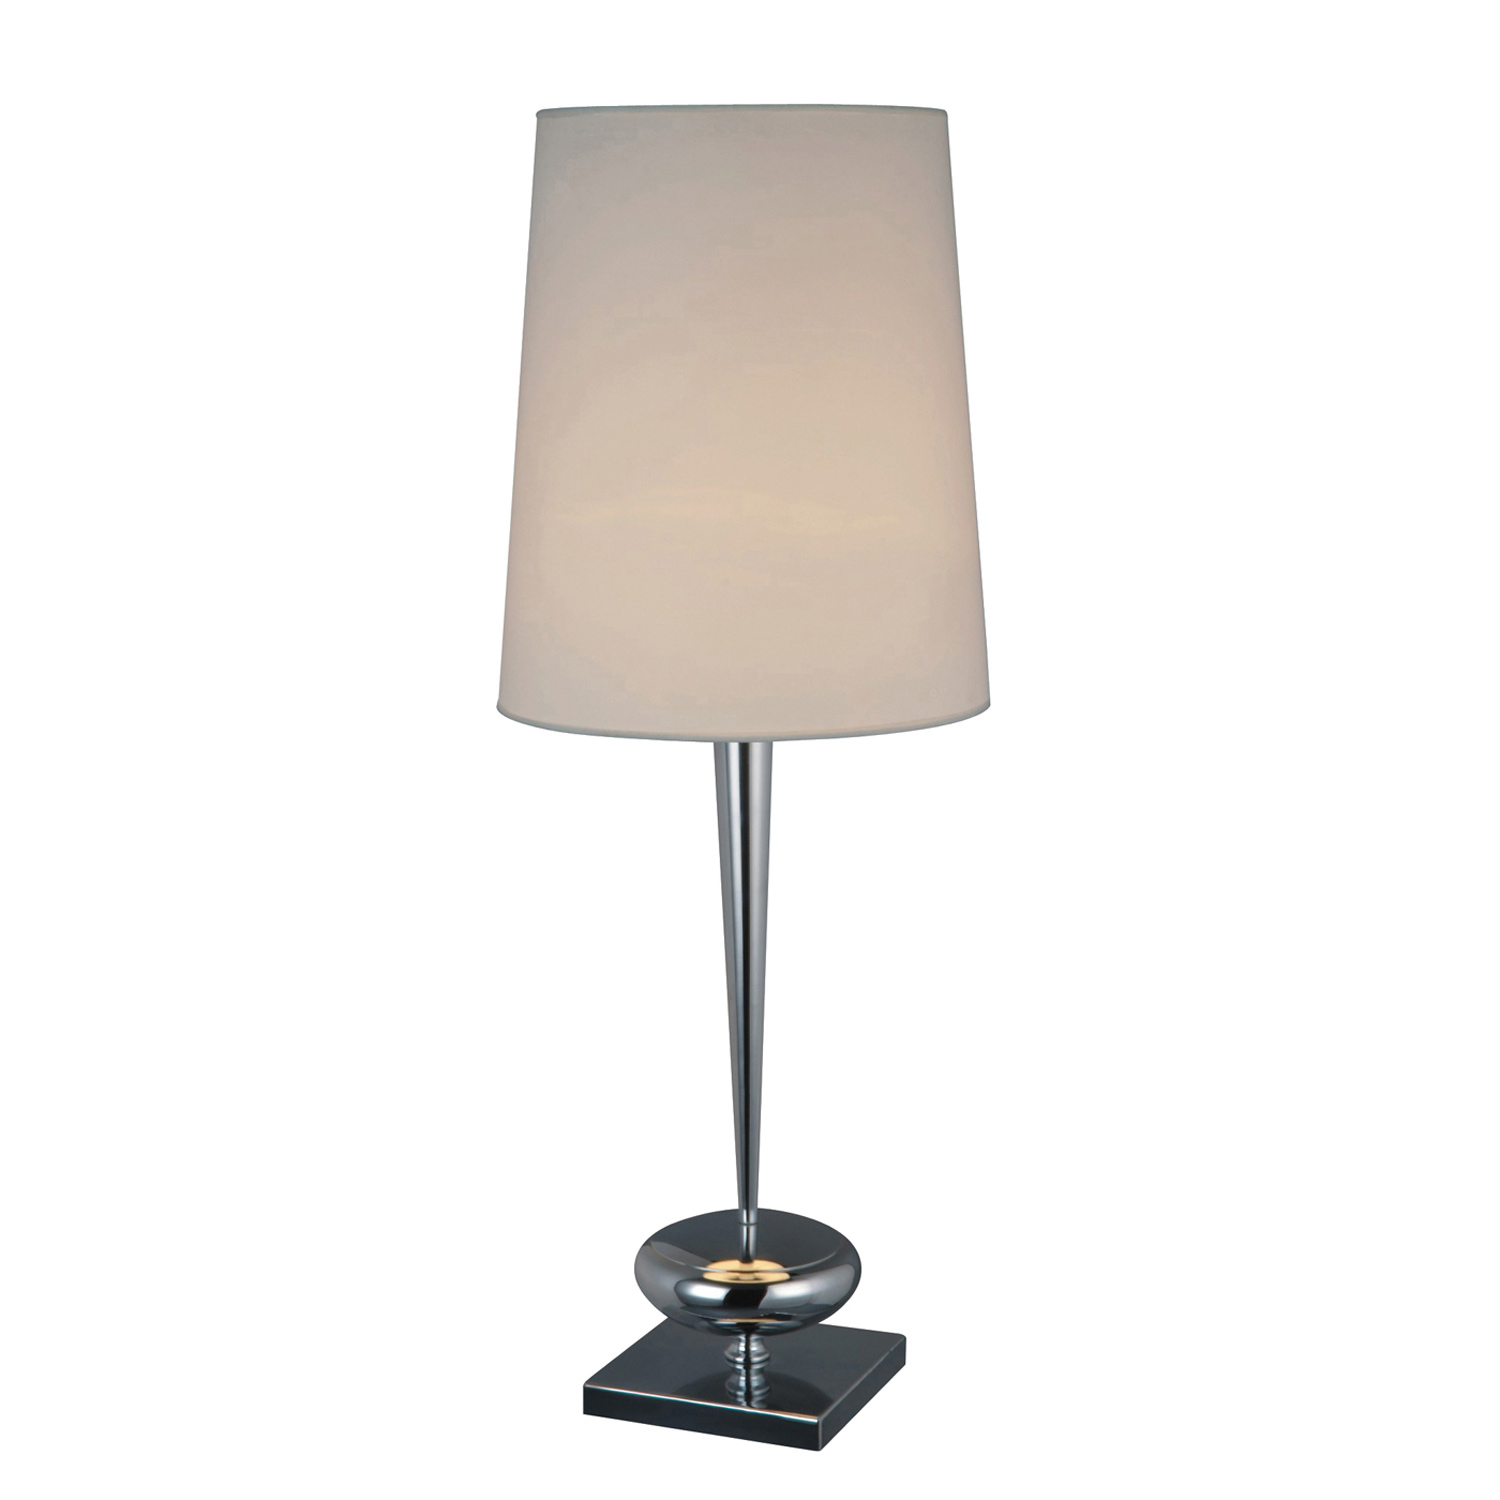 Elk Lighting D1516 Sayre Table Lamp - Chrome